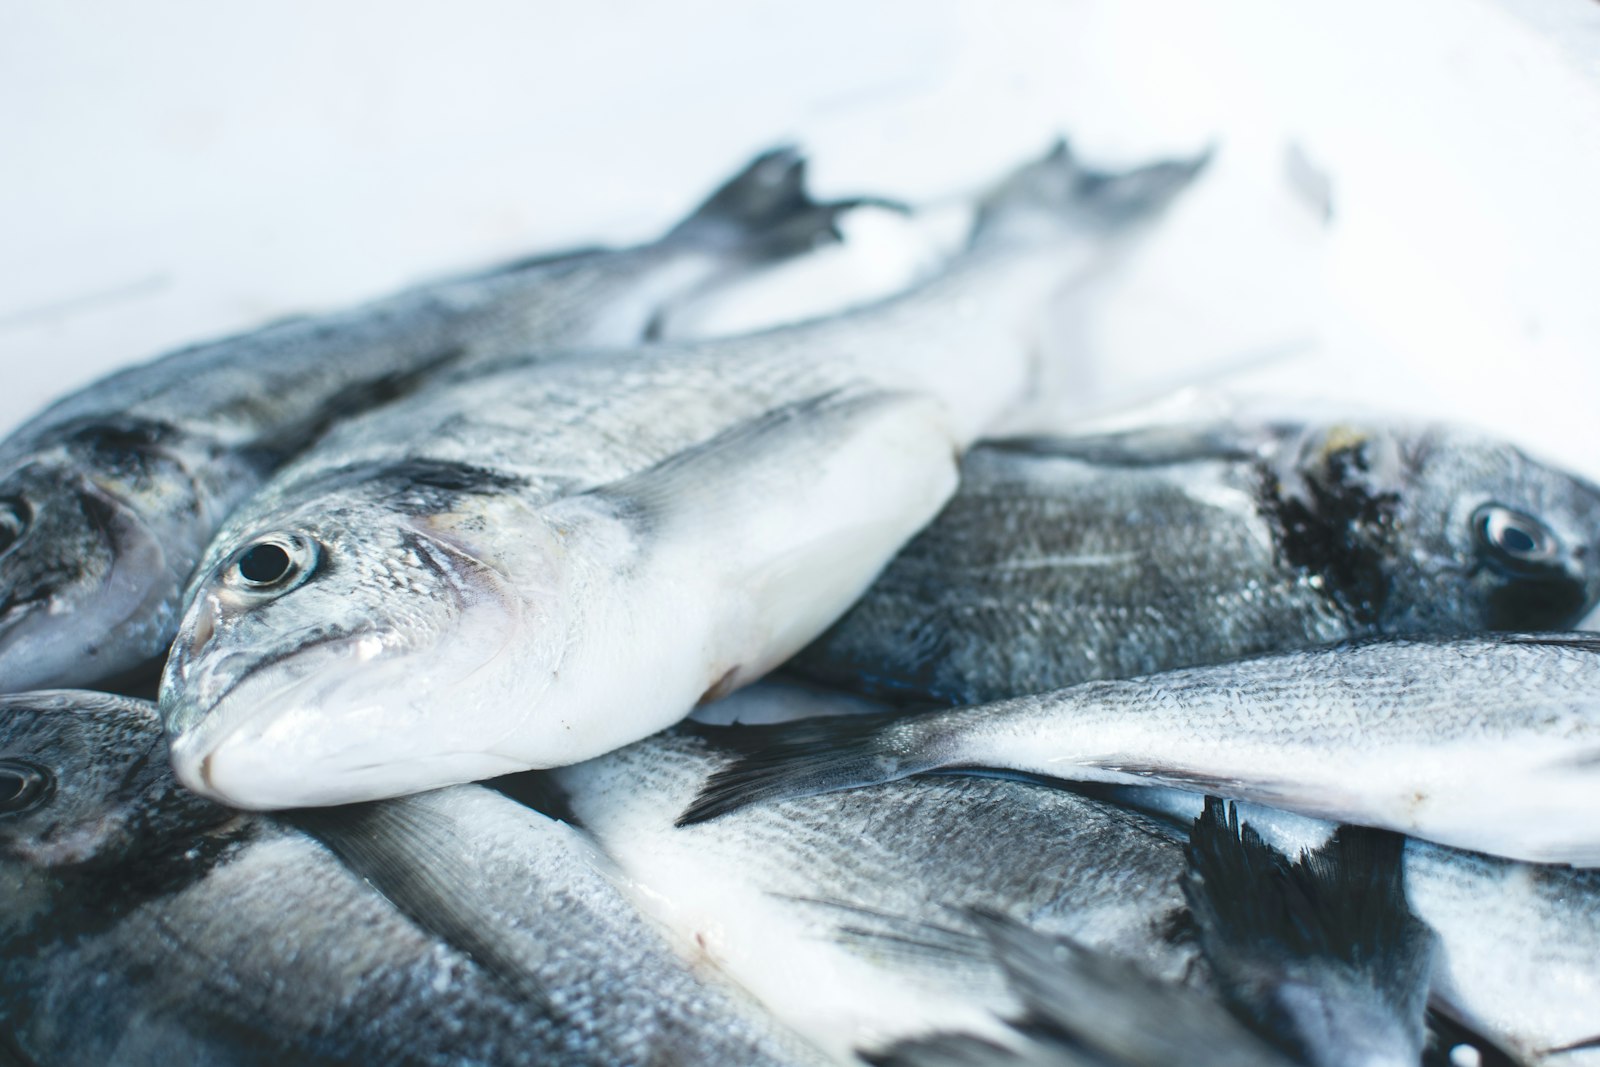 食用鱼含多种惊人污染物! BC水质恶化, 杀虫剂、可卡因全吃进嘴!